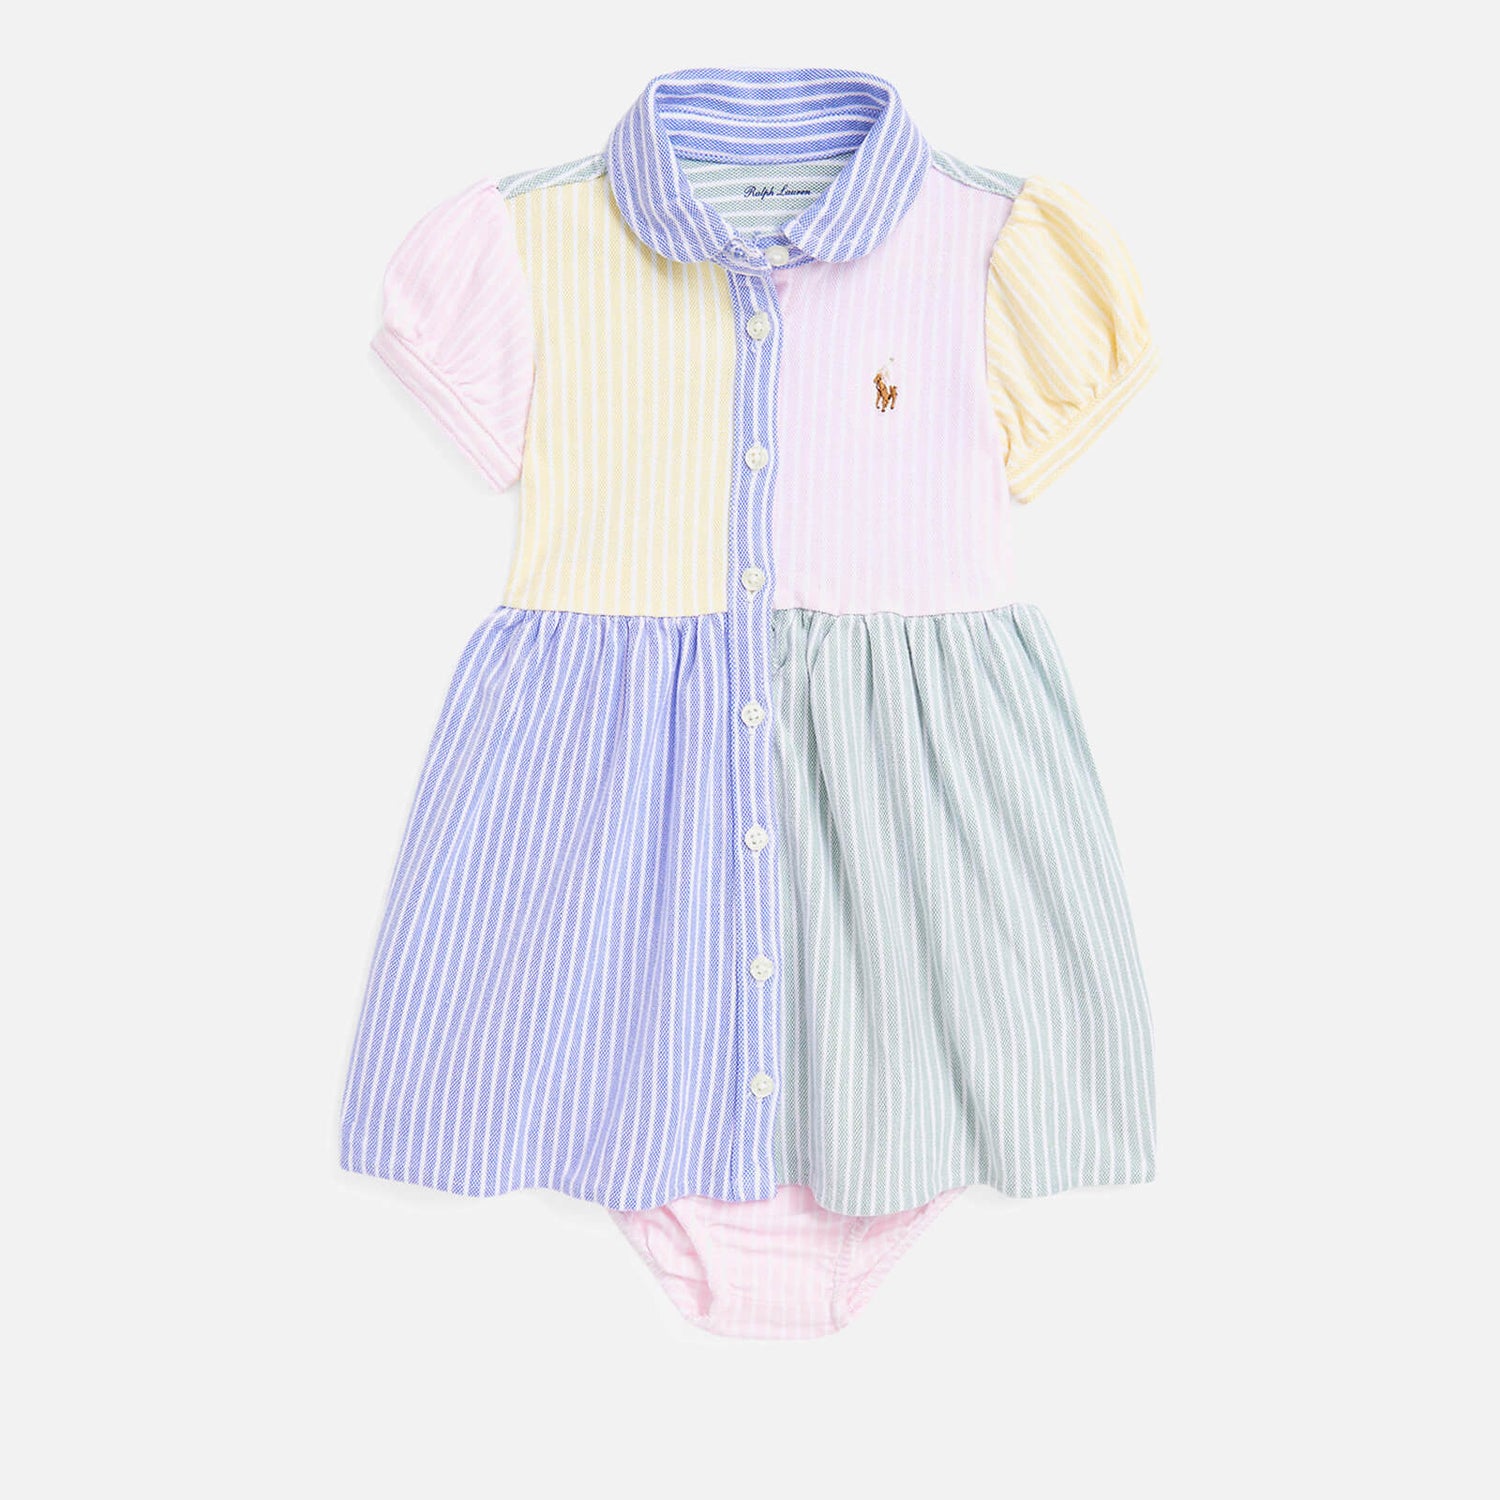 Polo Ralph Lauren Baby Girls' Cotton Dress